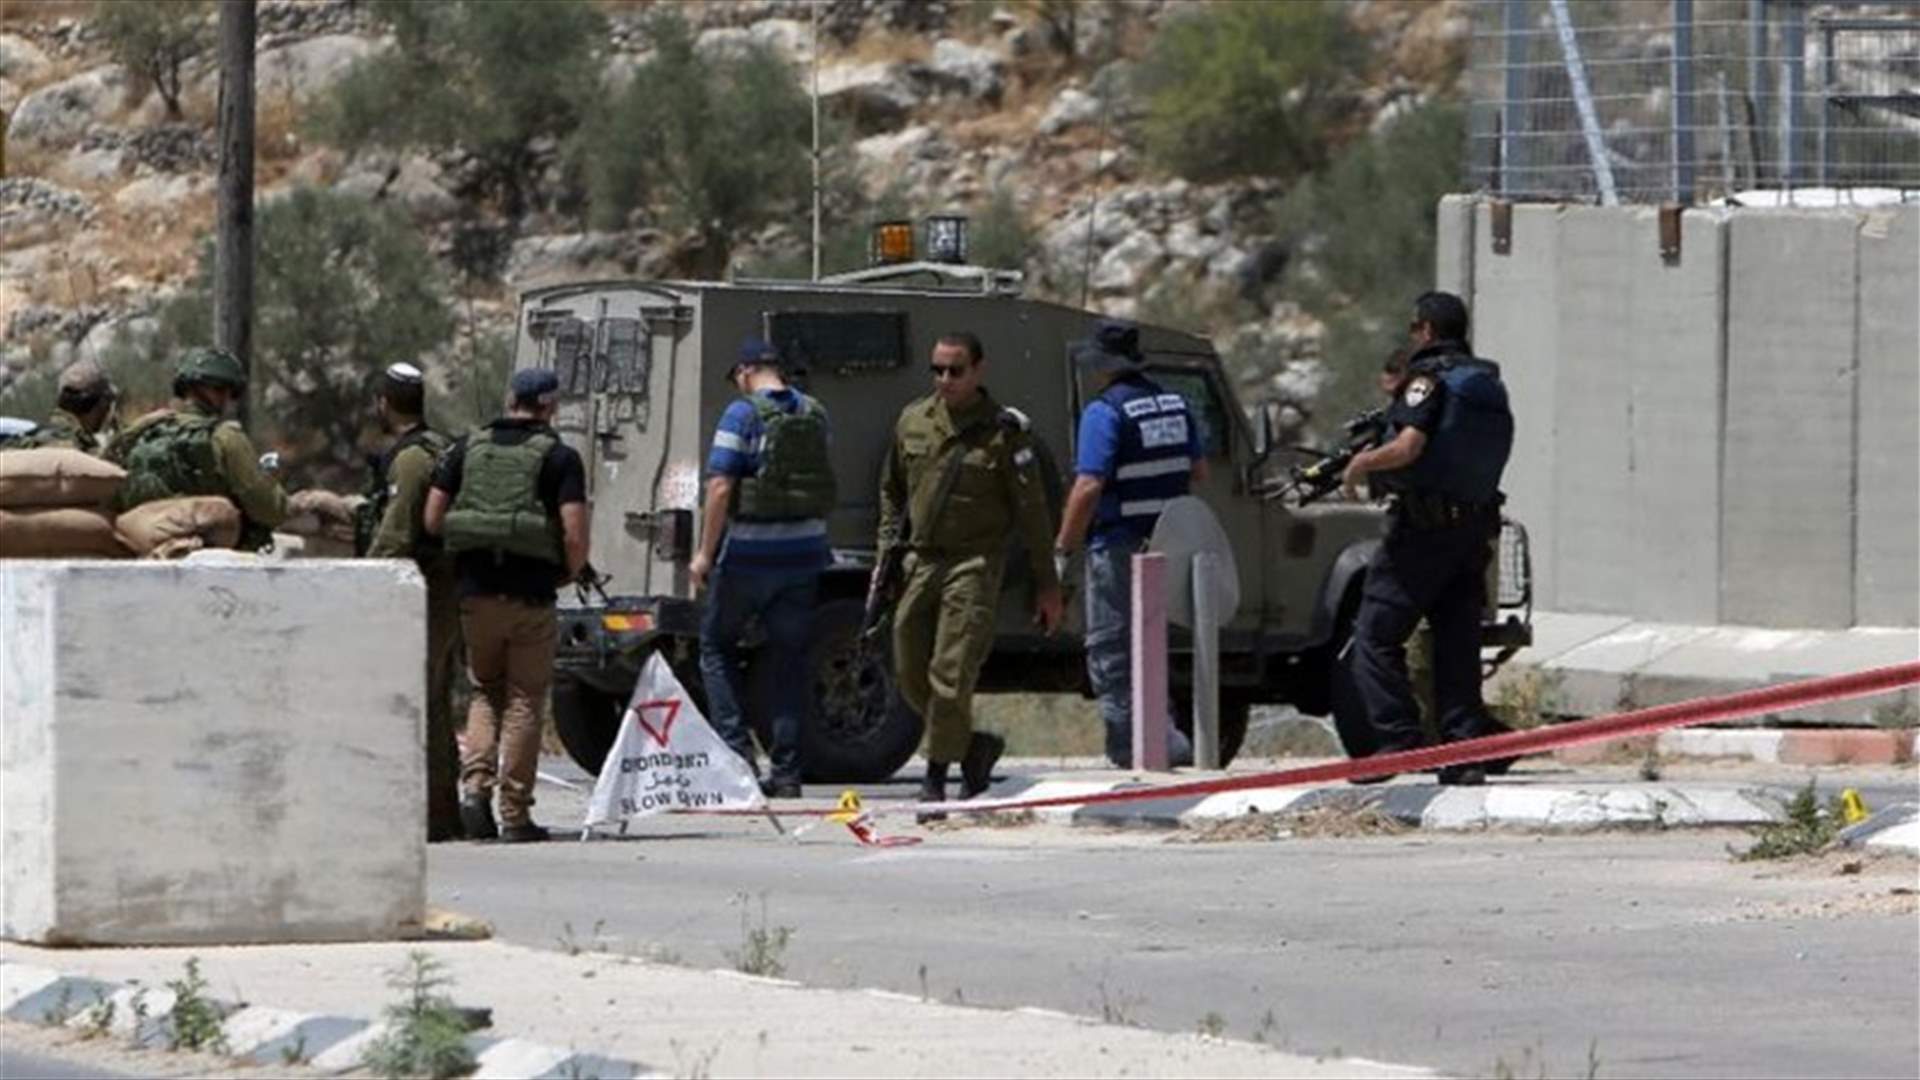 Palestinian tries to stab Israeli troops in WBank, shot dead - army